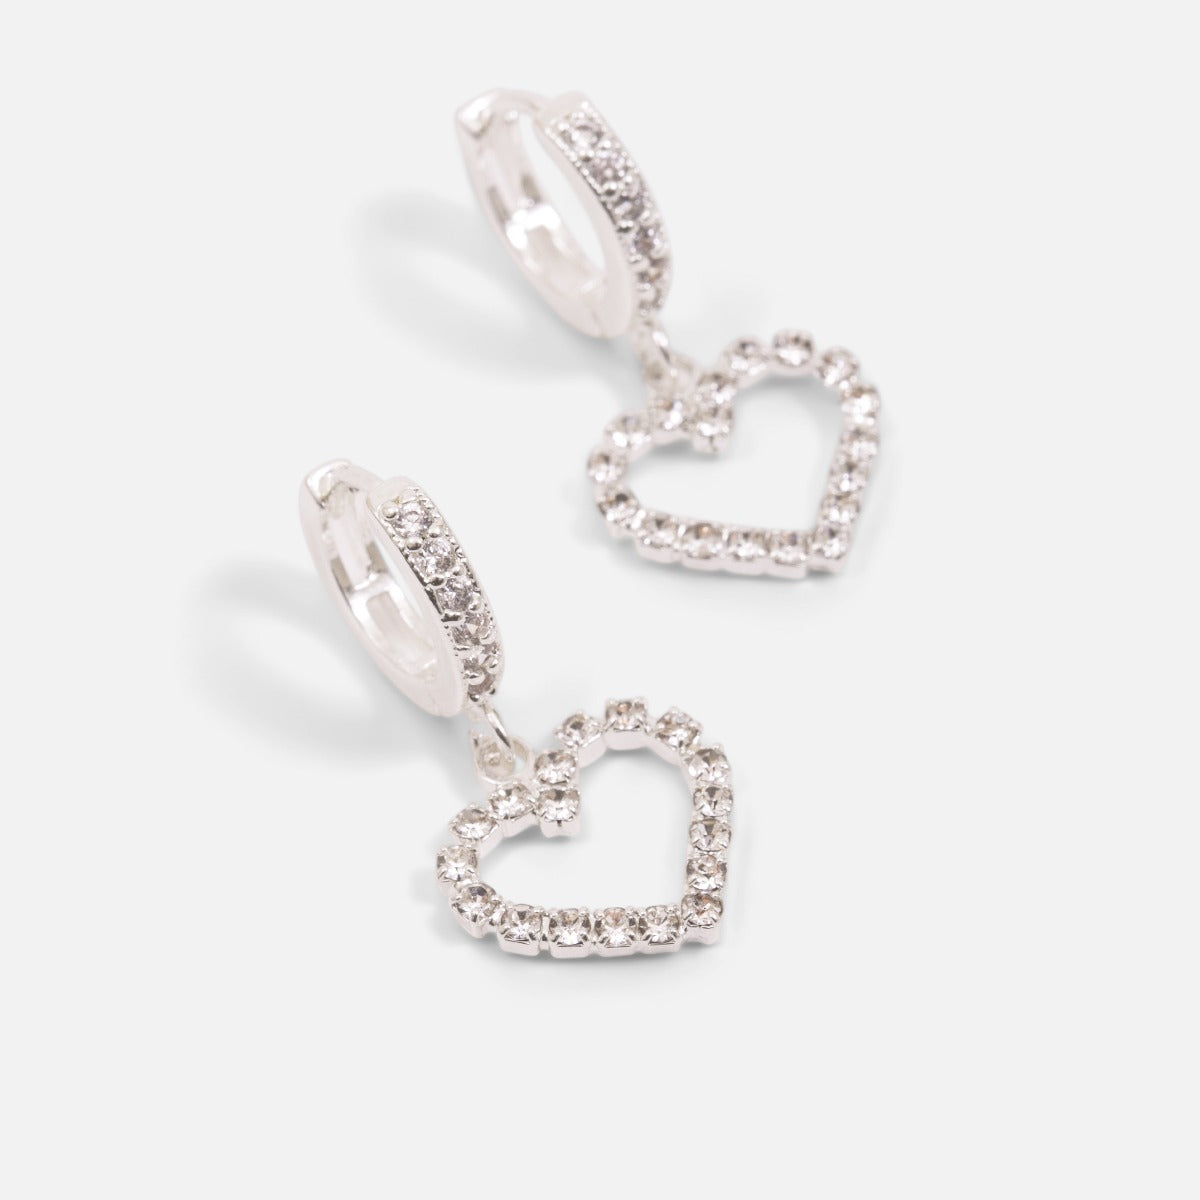 Boucles d’oreilles anneaux argentées avec pierres scintillantes et breloque cœur